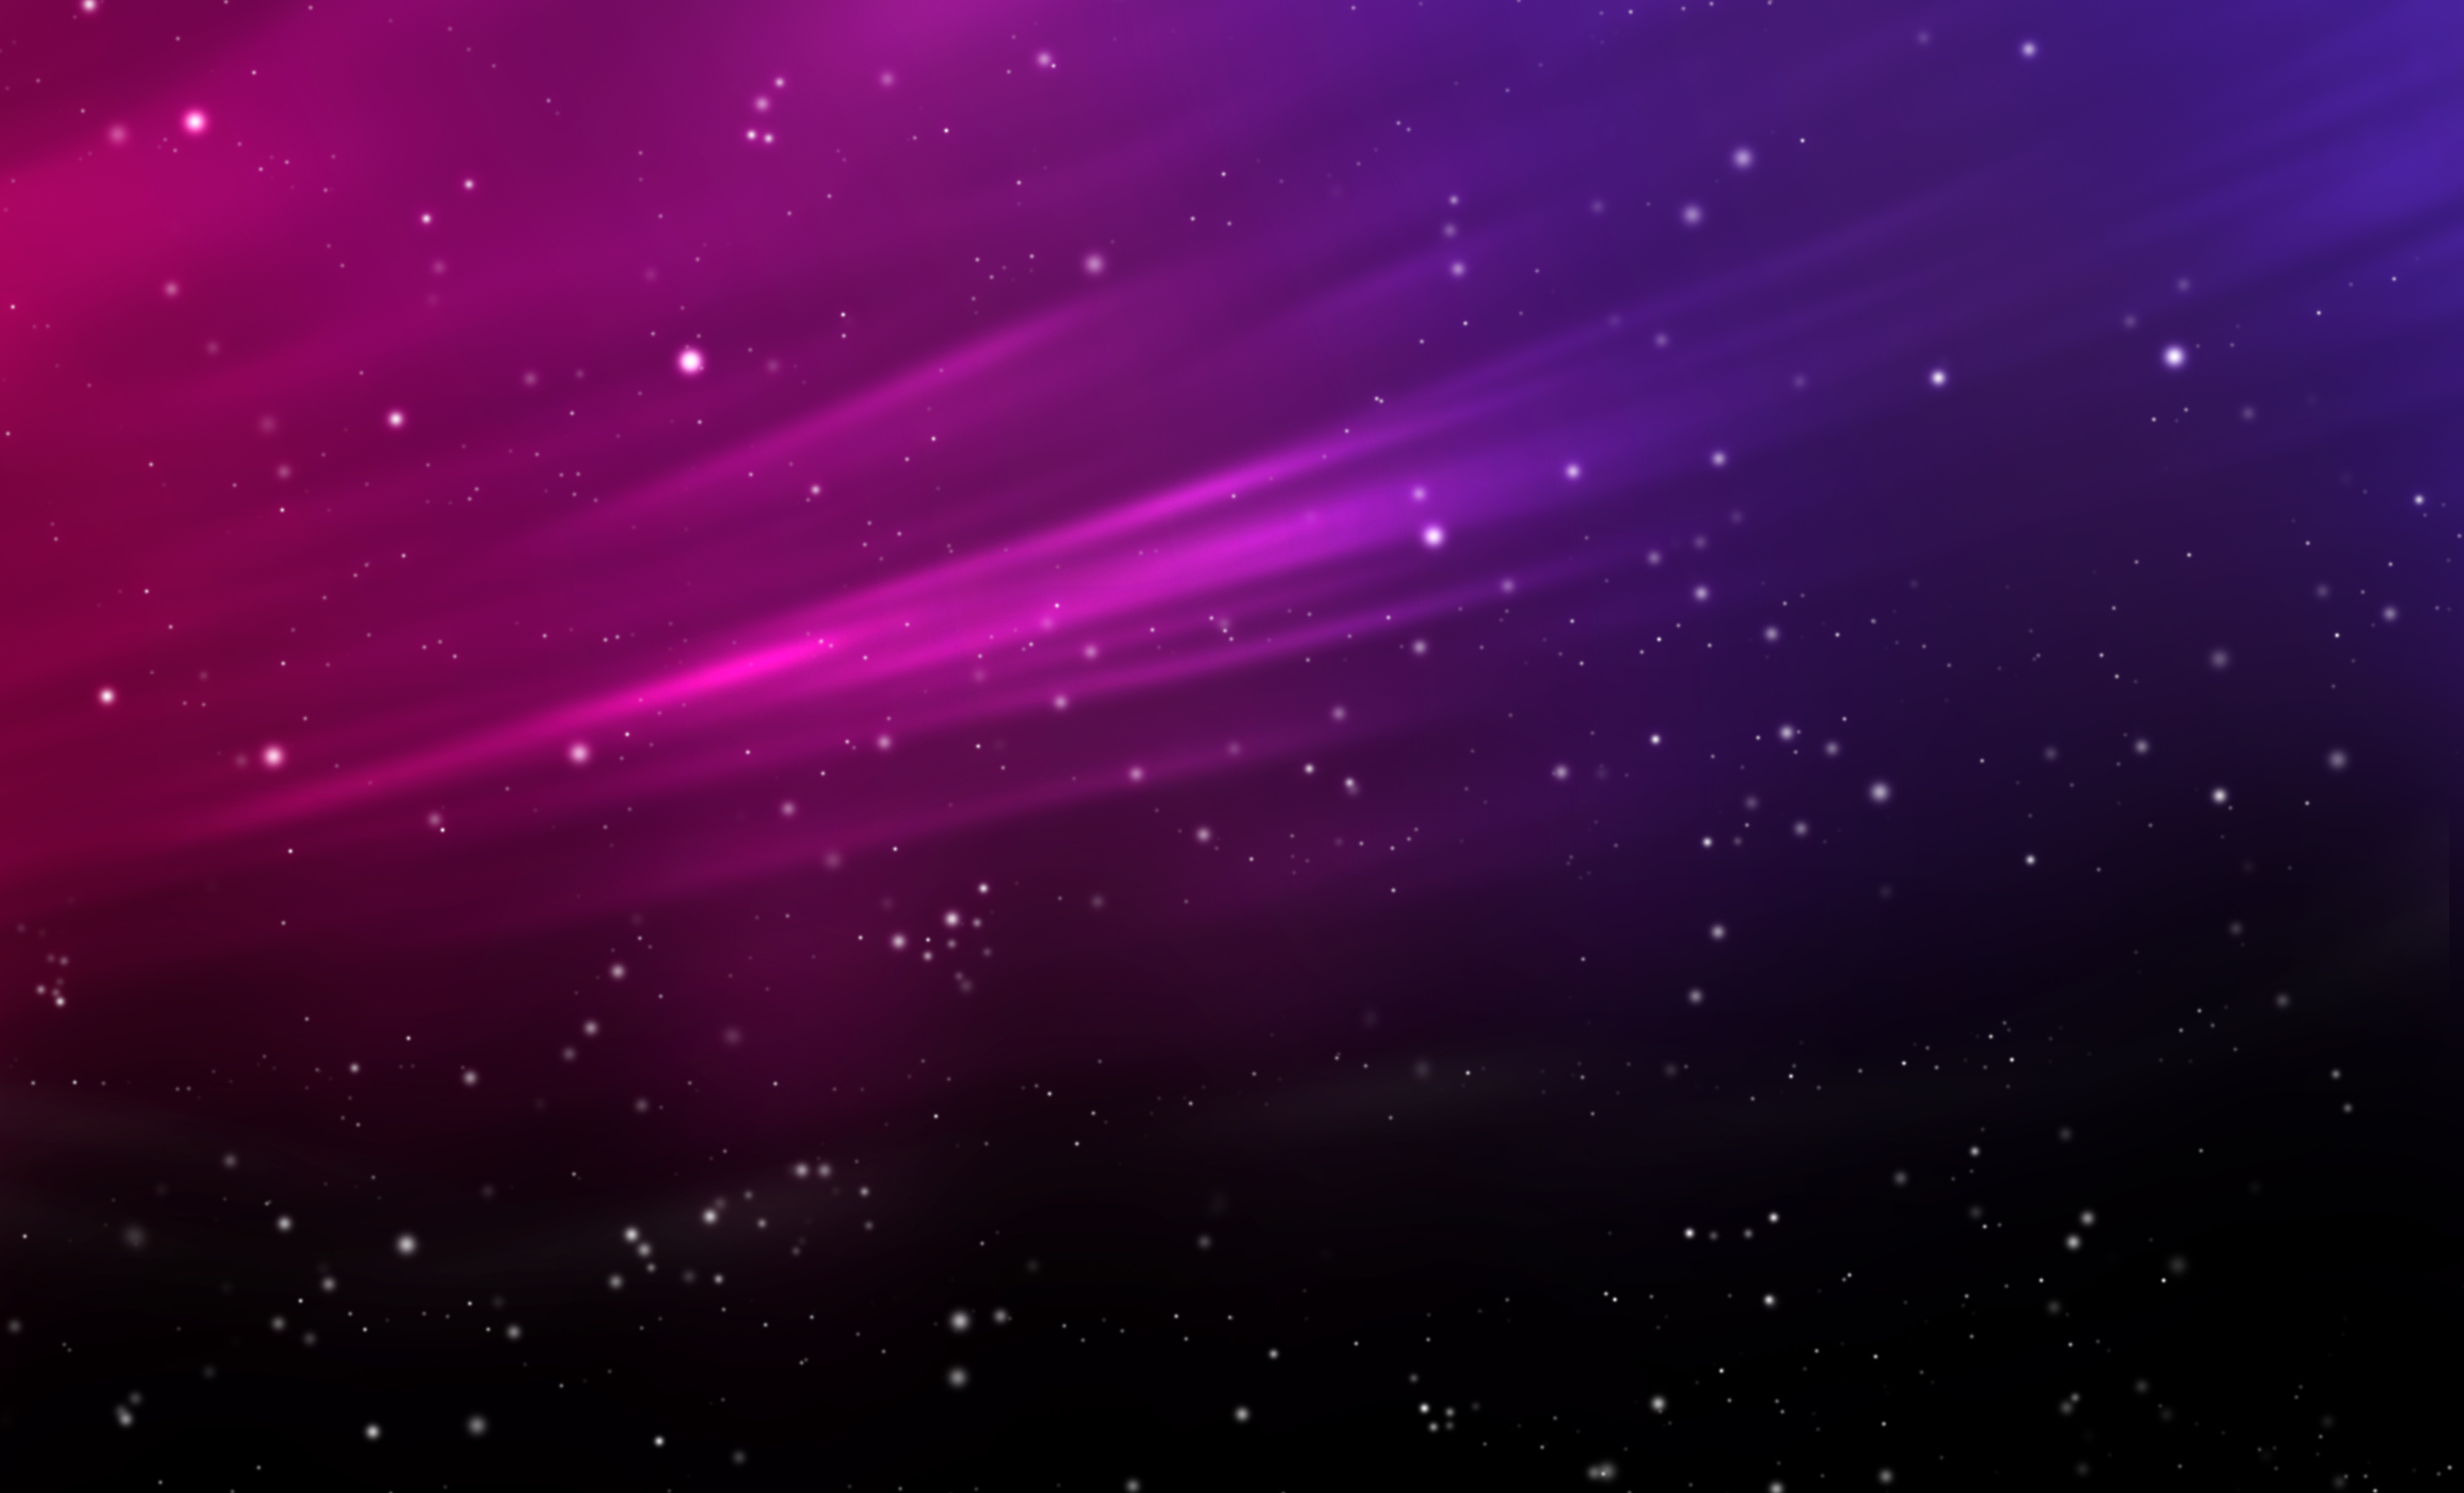 Pink Purple Images  Free Download on Freepik